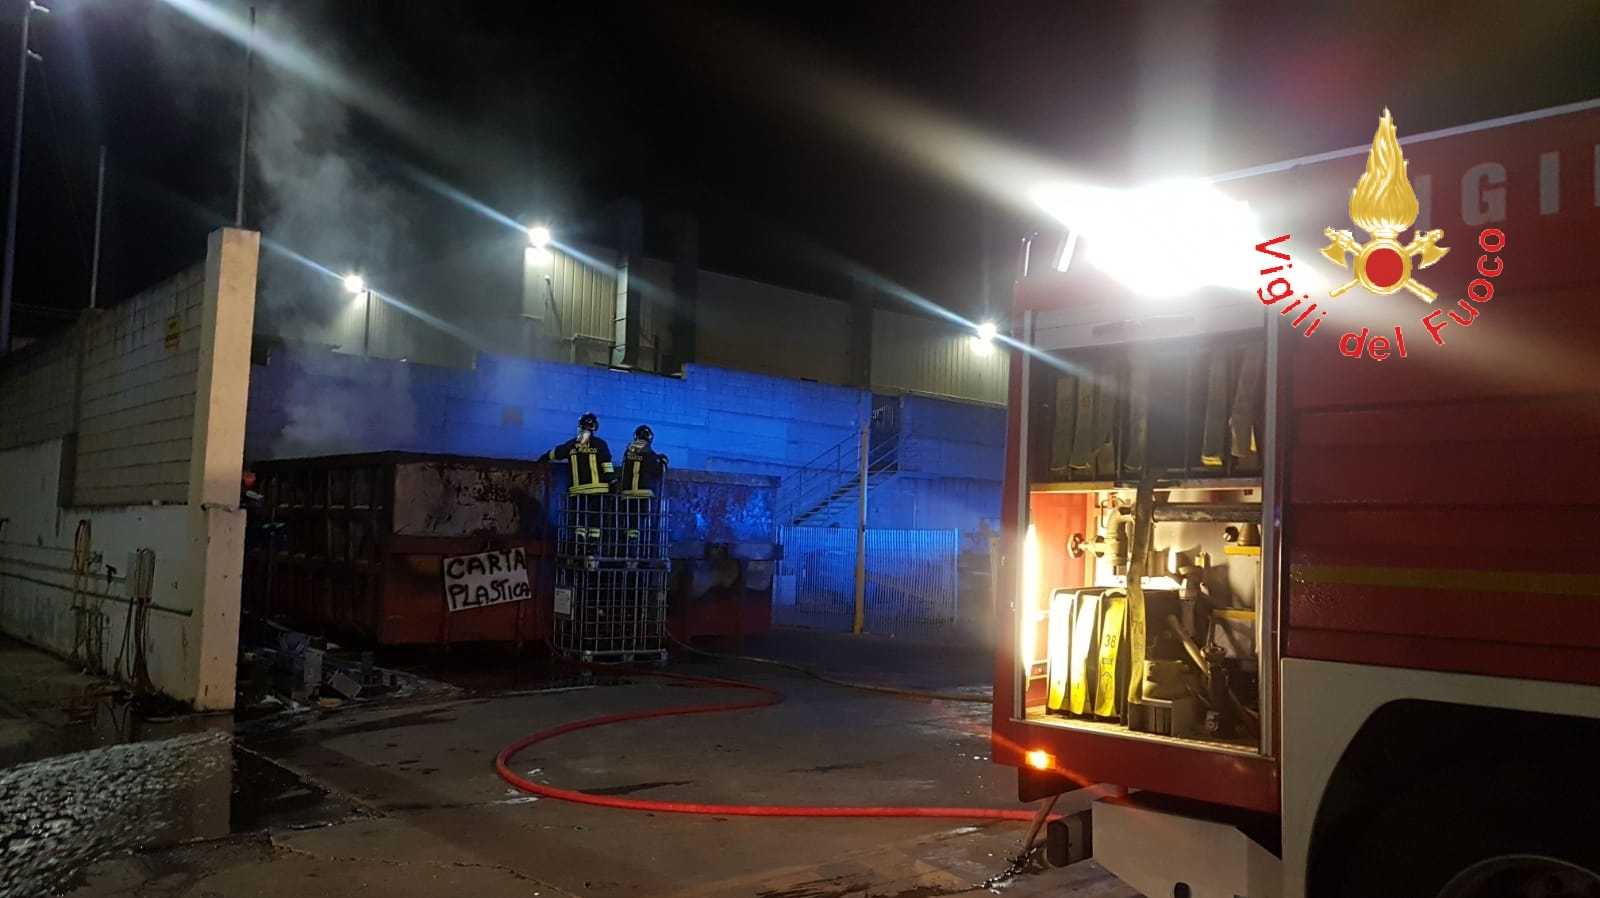 Incendio rifiuti presso azienda produzione di natanti a Roccelletta di Borgia CZ, intervento dei VVF